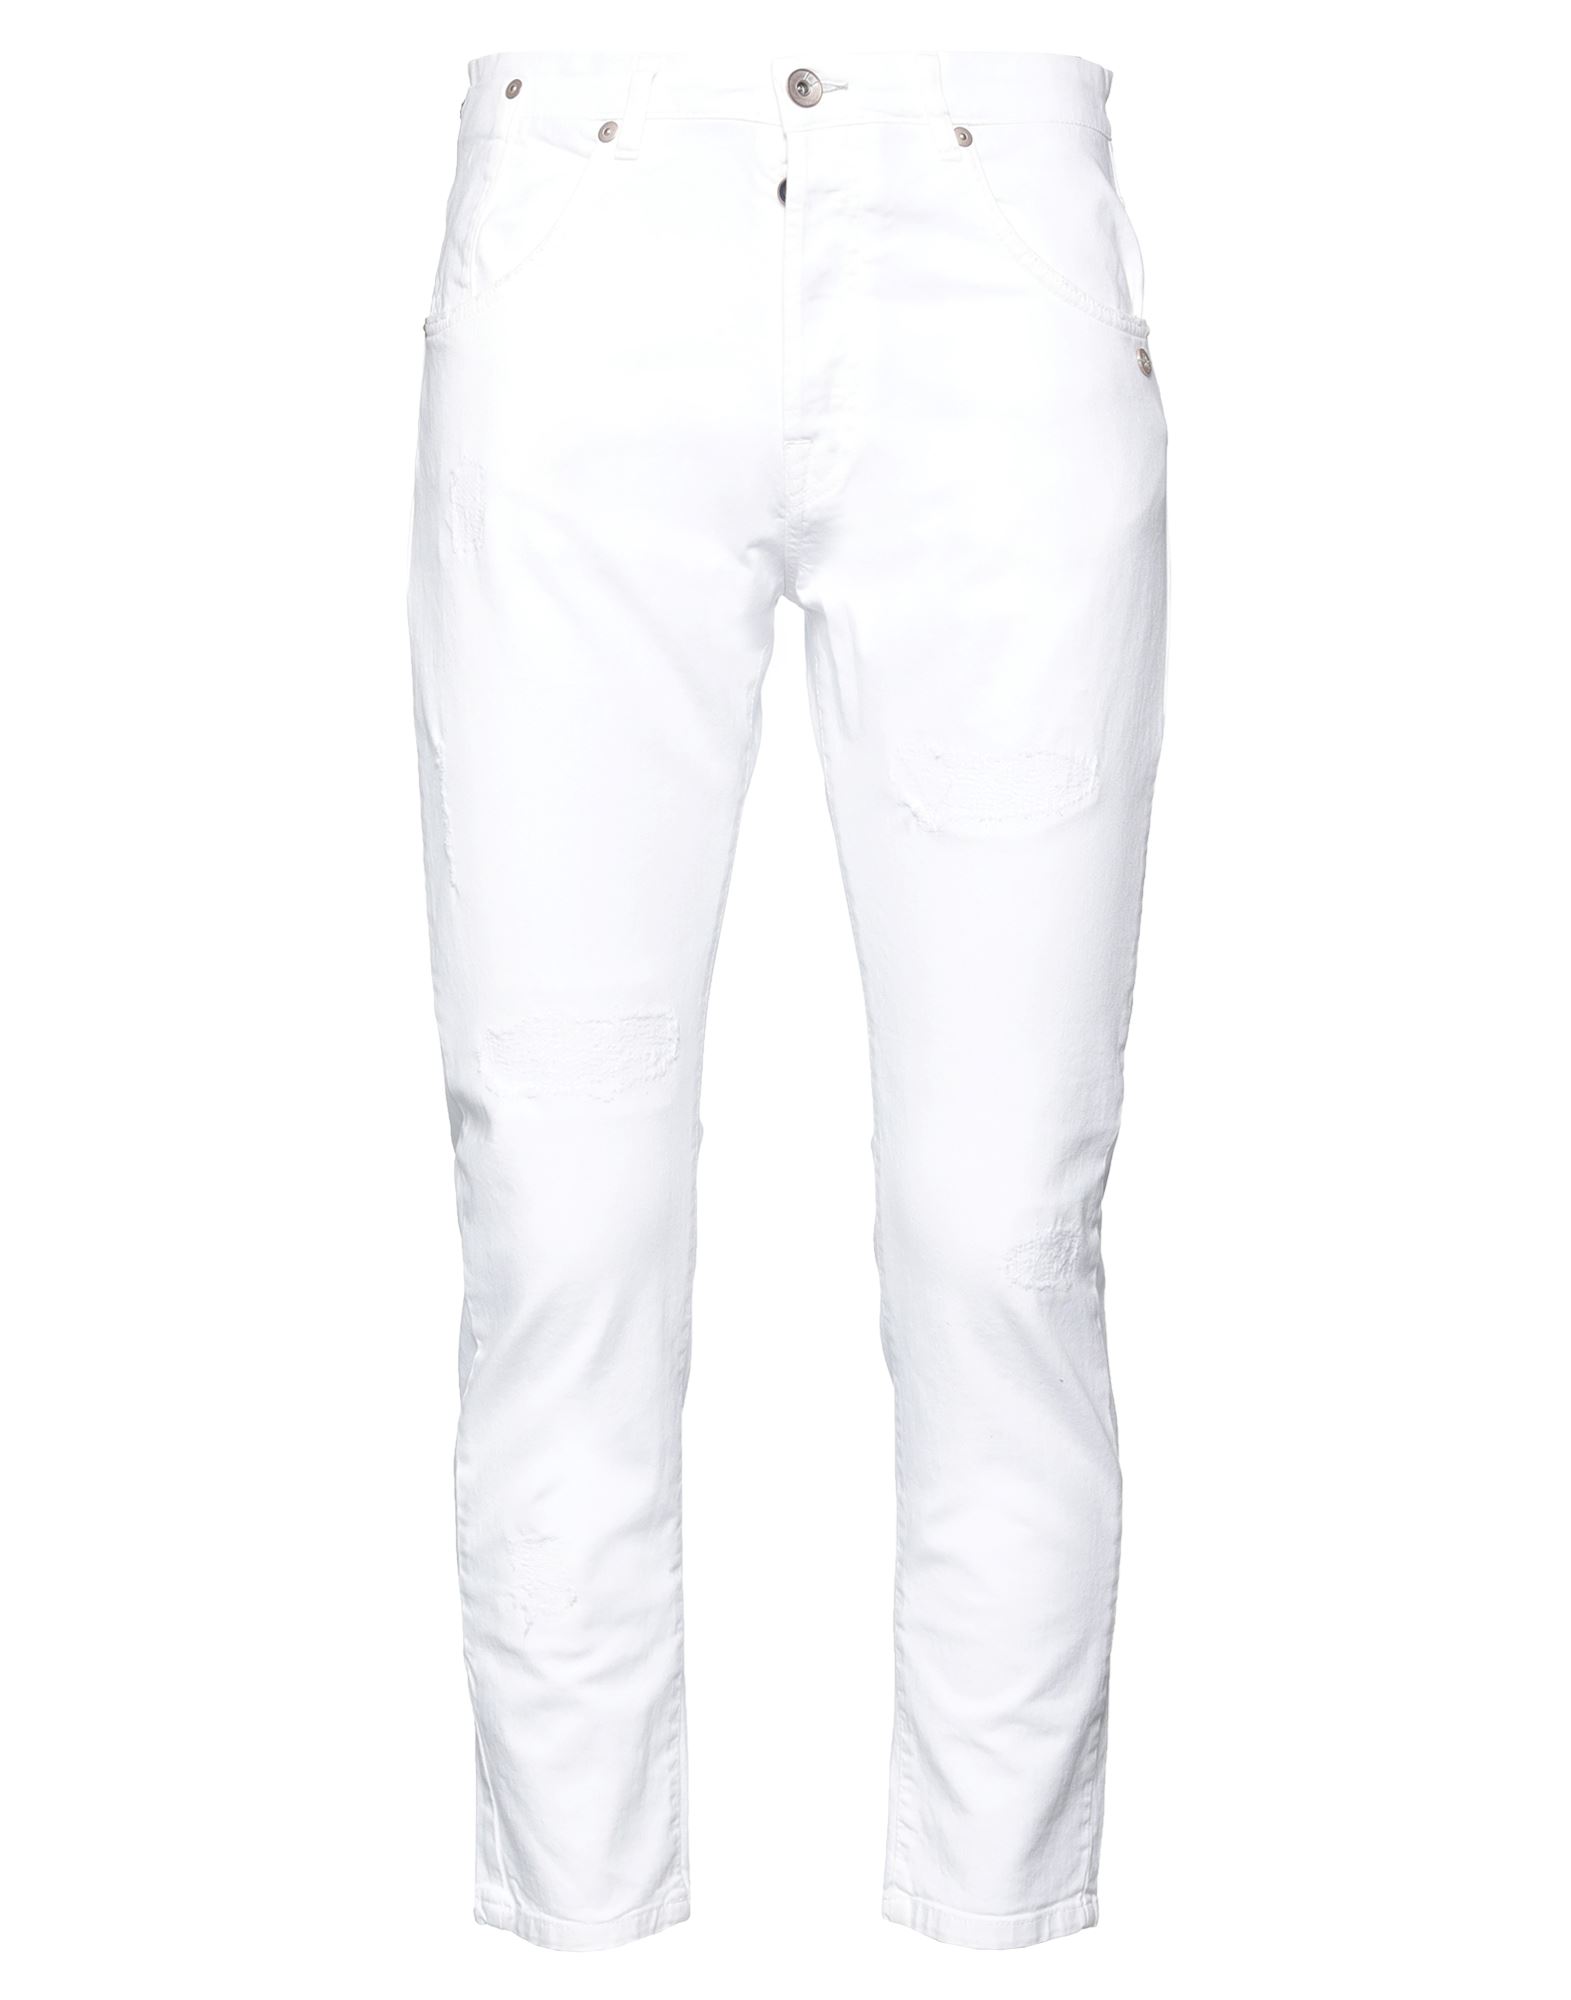 Berna Jeans In White